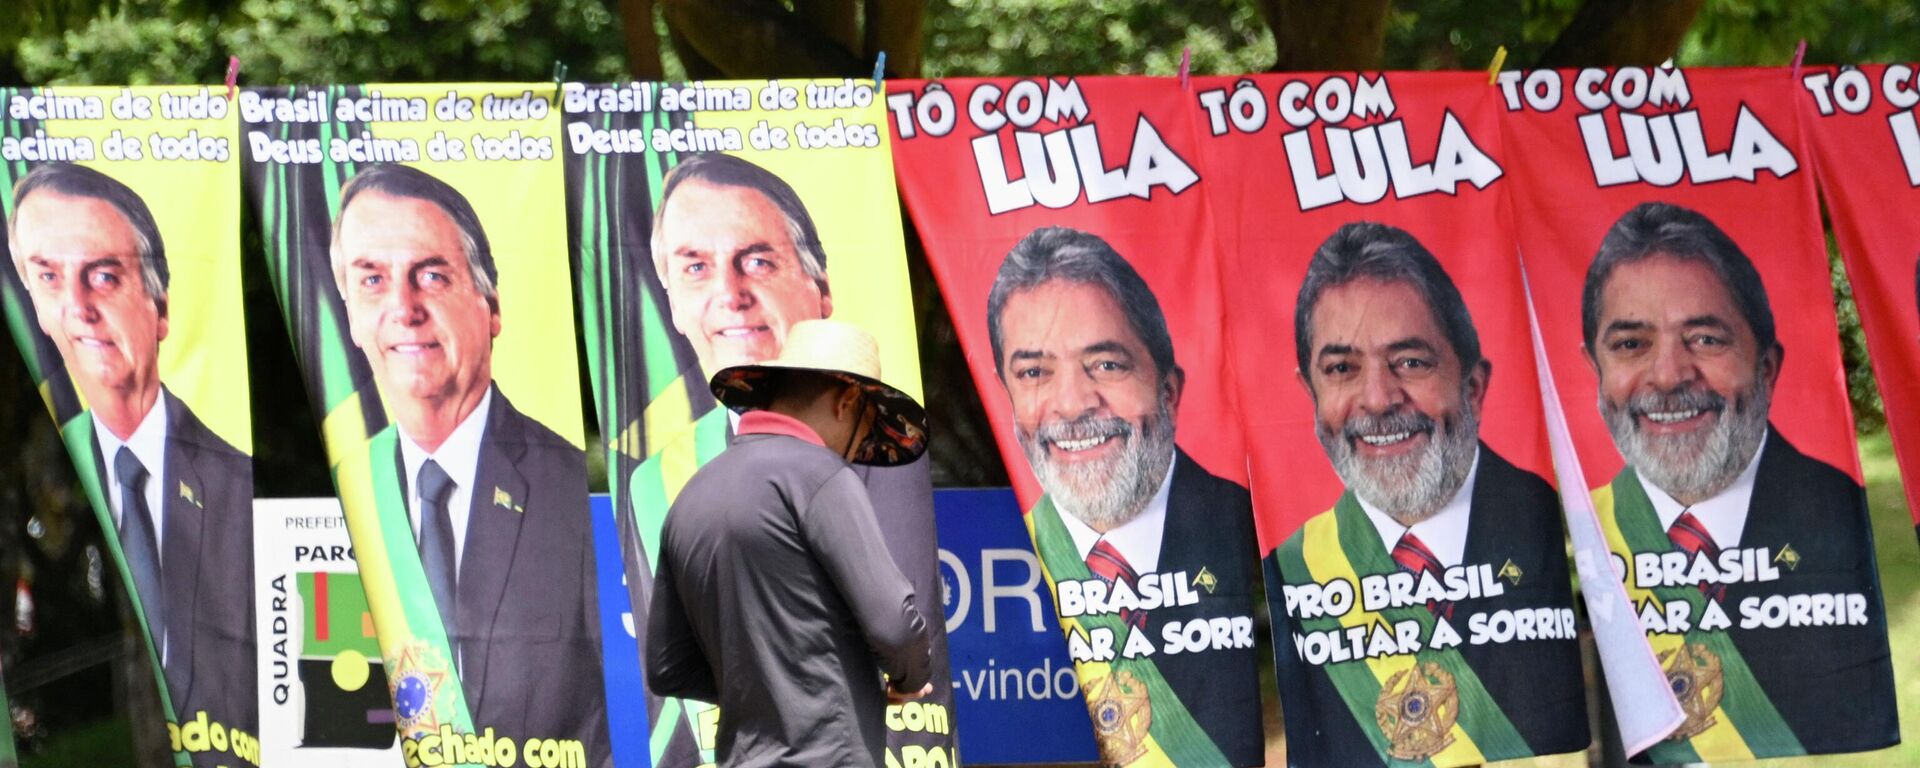 Banderas con las imágenes de Jair Bolsonaro y Luiz Inacio Lula da Silva, candidatos a la presidencia de Brasil - Sputnik Mundo, 1920, 01.10.2022